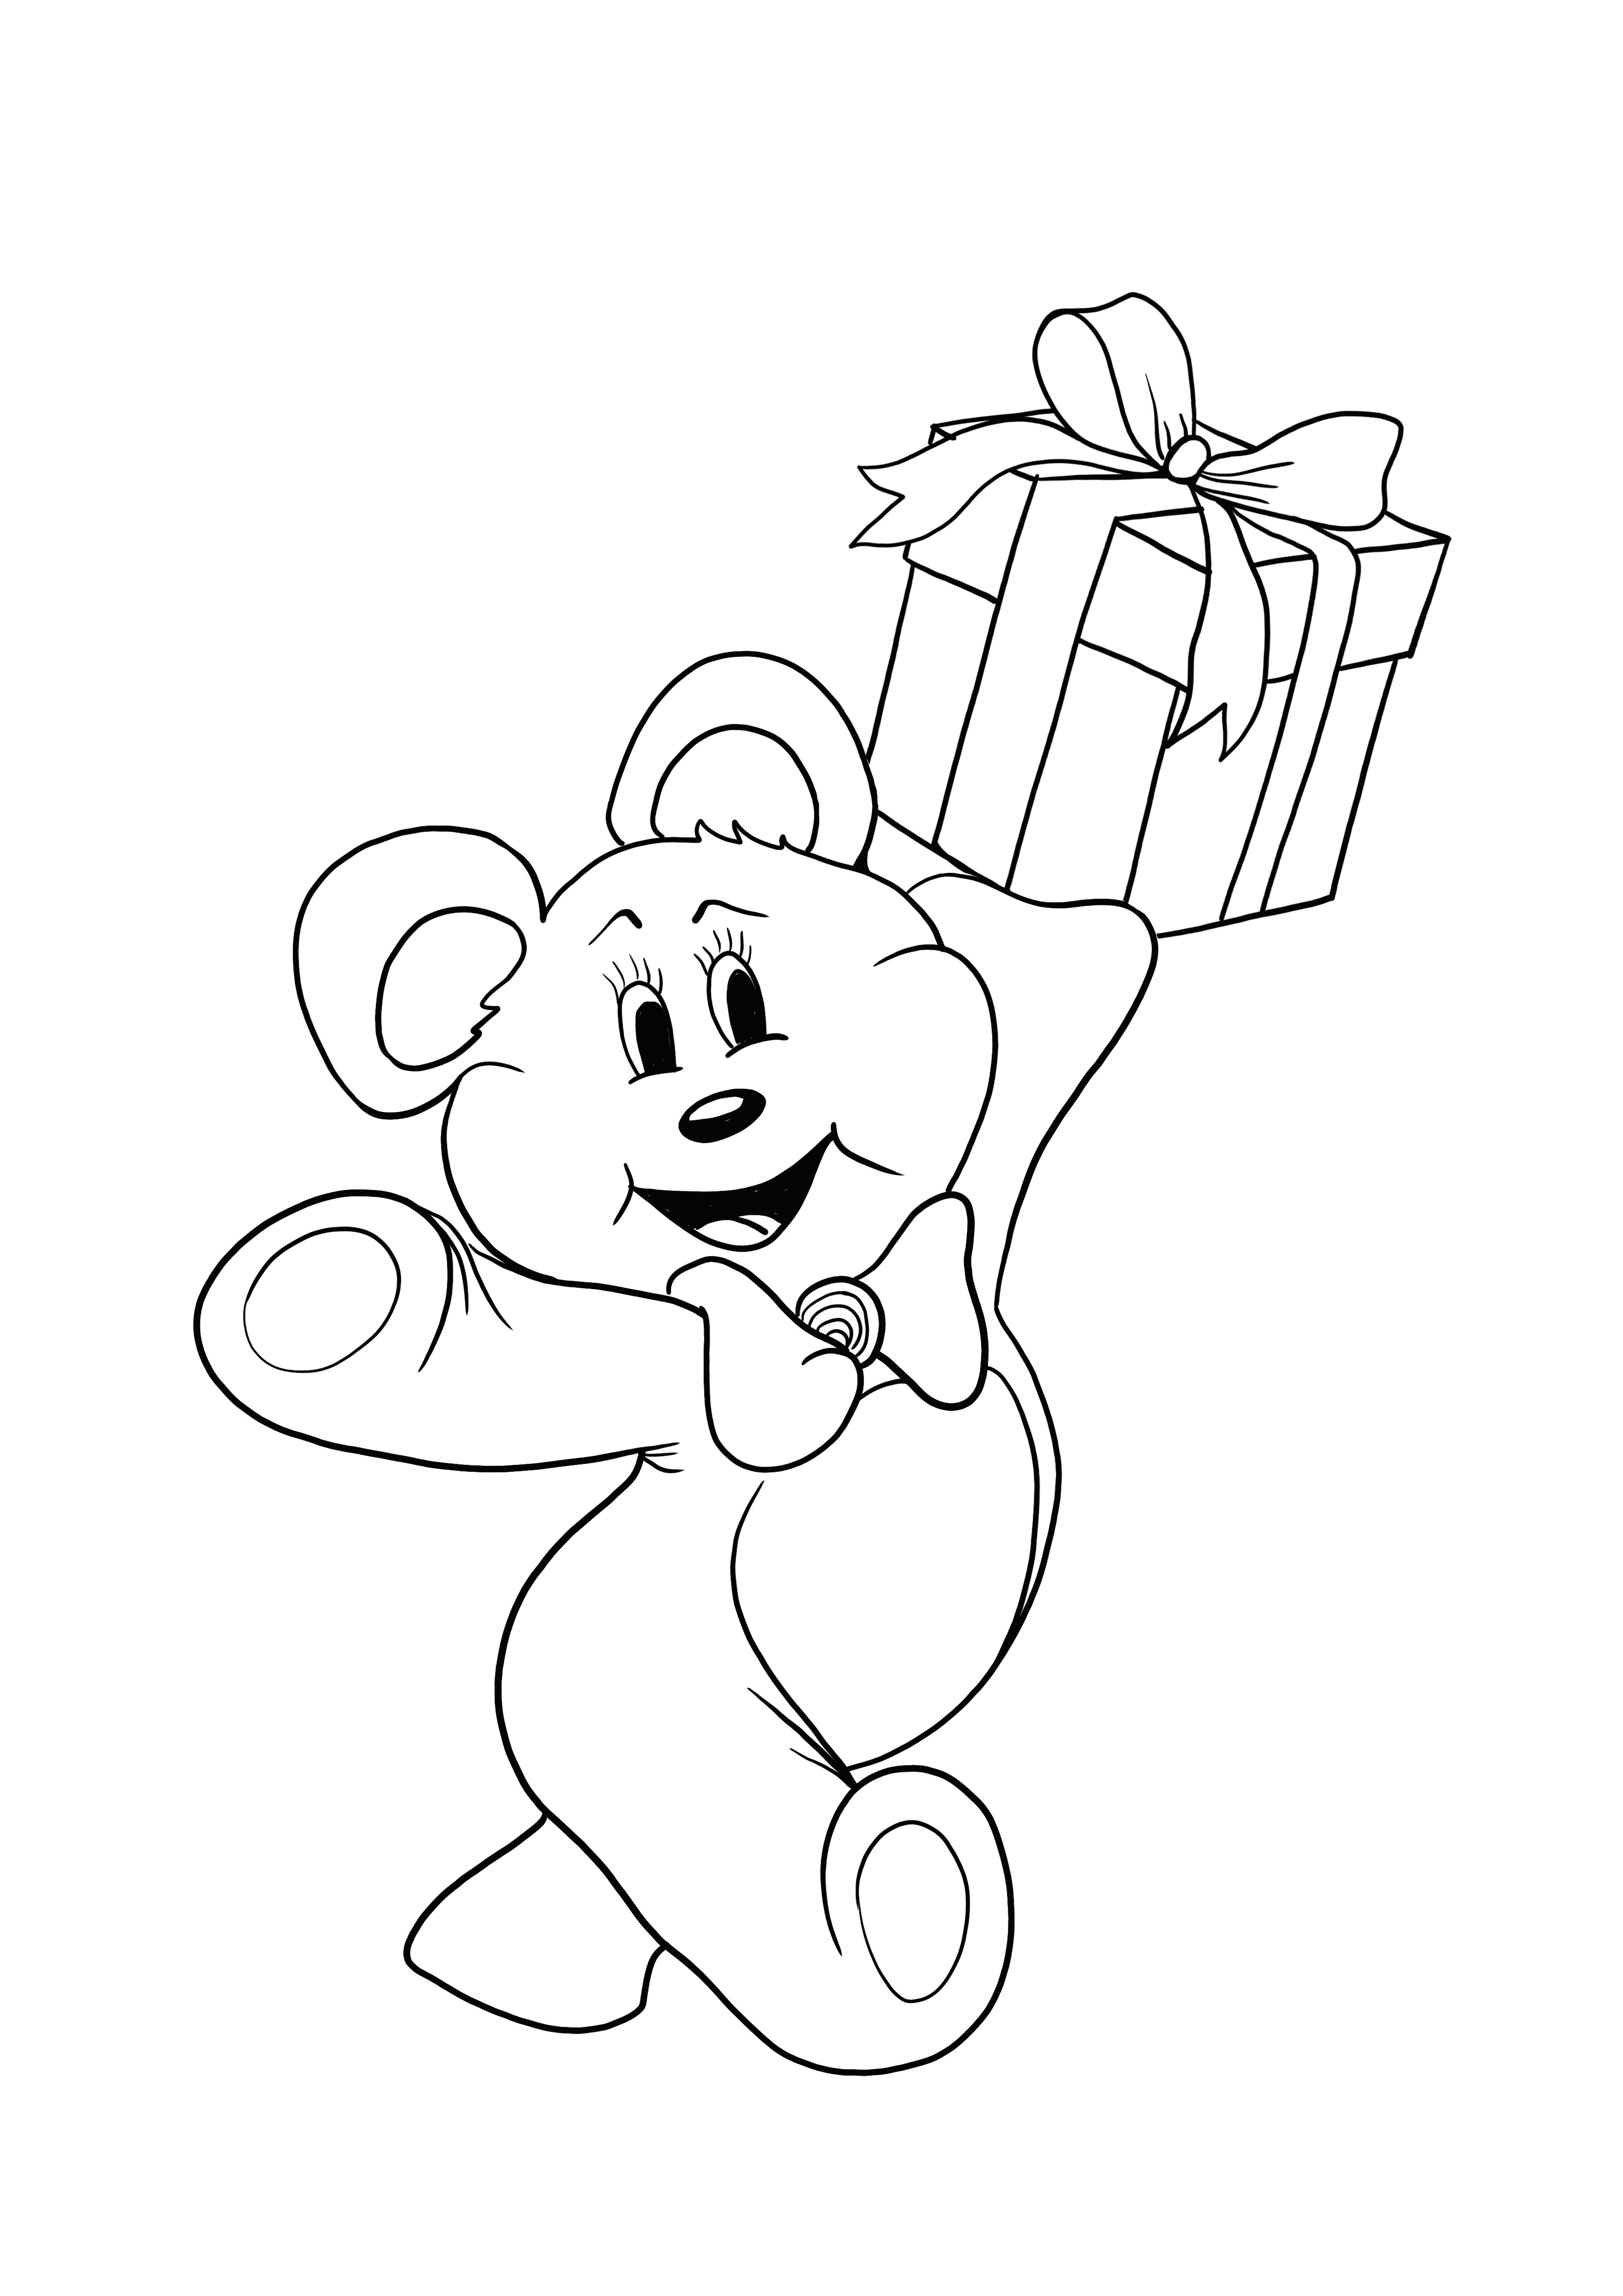 Teddy mit Geschenk zum Ausmalen kostenlos ausdrucken